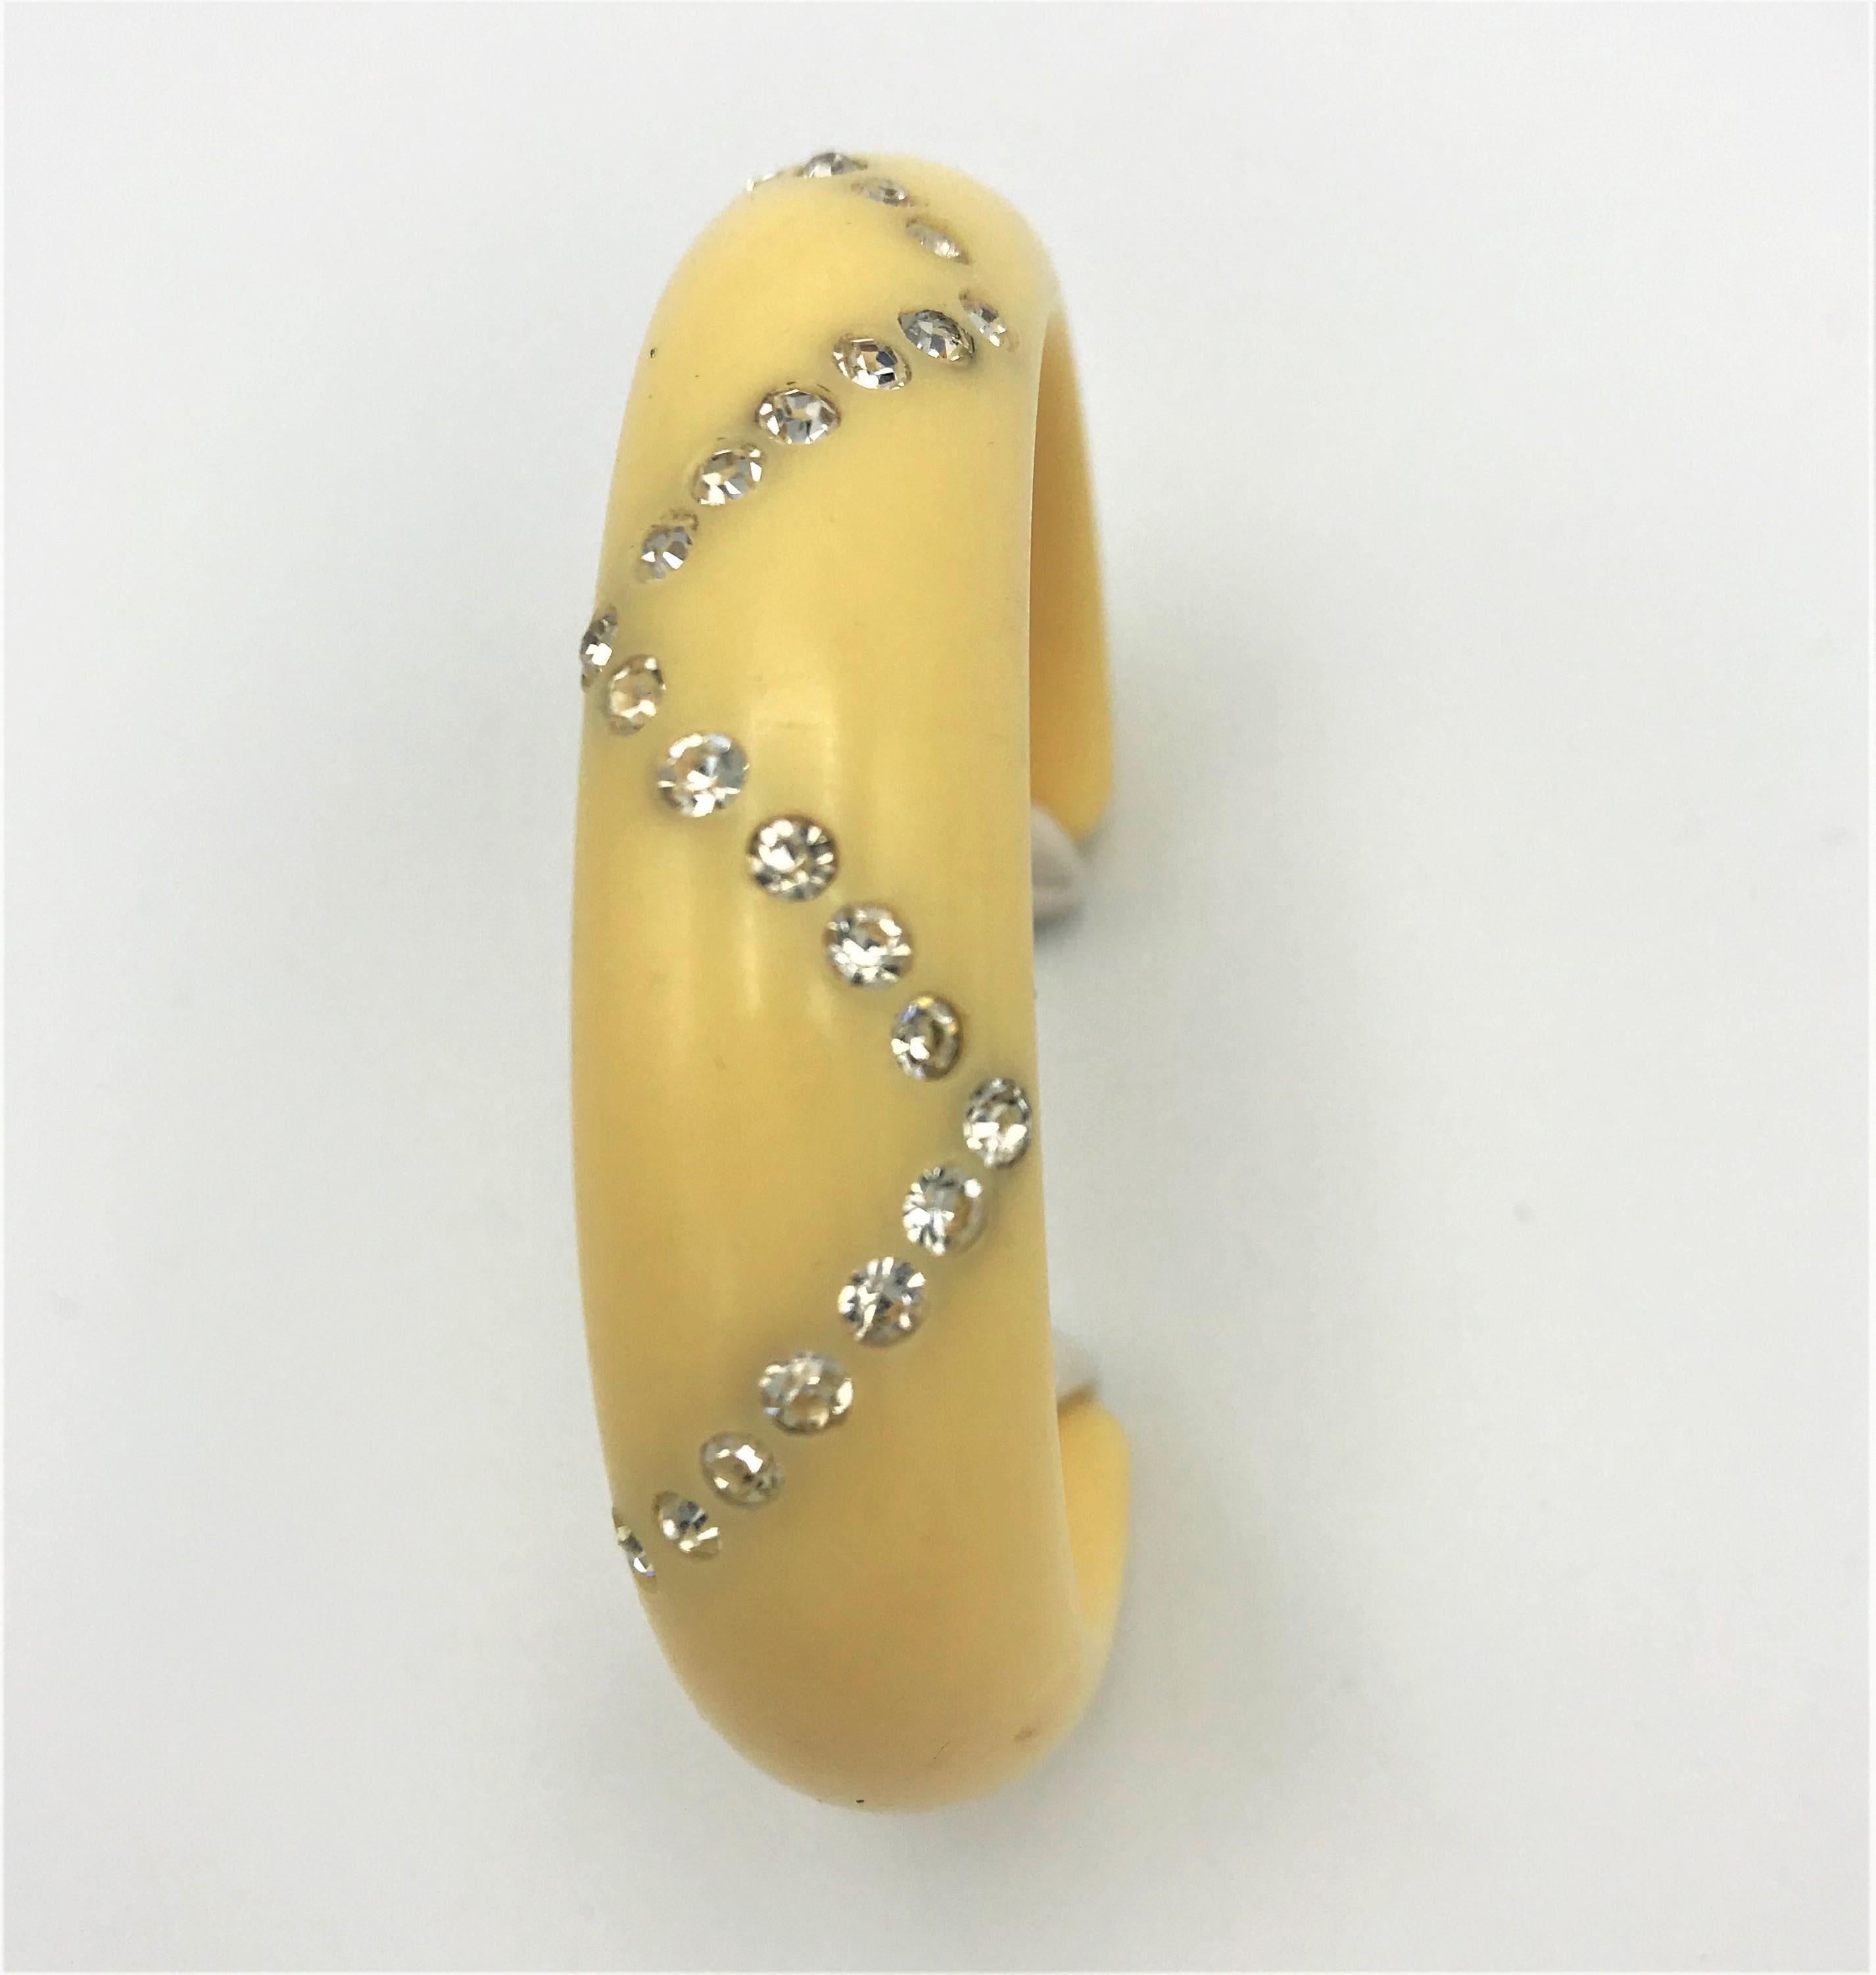 Joli bracelet ouvert en bakélite de couleur ivoire serti de strass clairs.
Mesures : Largeur intérieure 2 cm, extérieure 2,5 cm. Largeur intérieure d'une ouverture à l'autre 13 cm +
3 cm . Diamètre de l'ovale 6 cm. 
Bon état et très beau bracelet. 